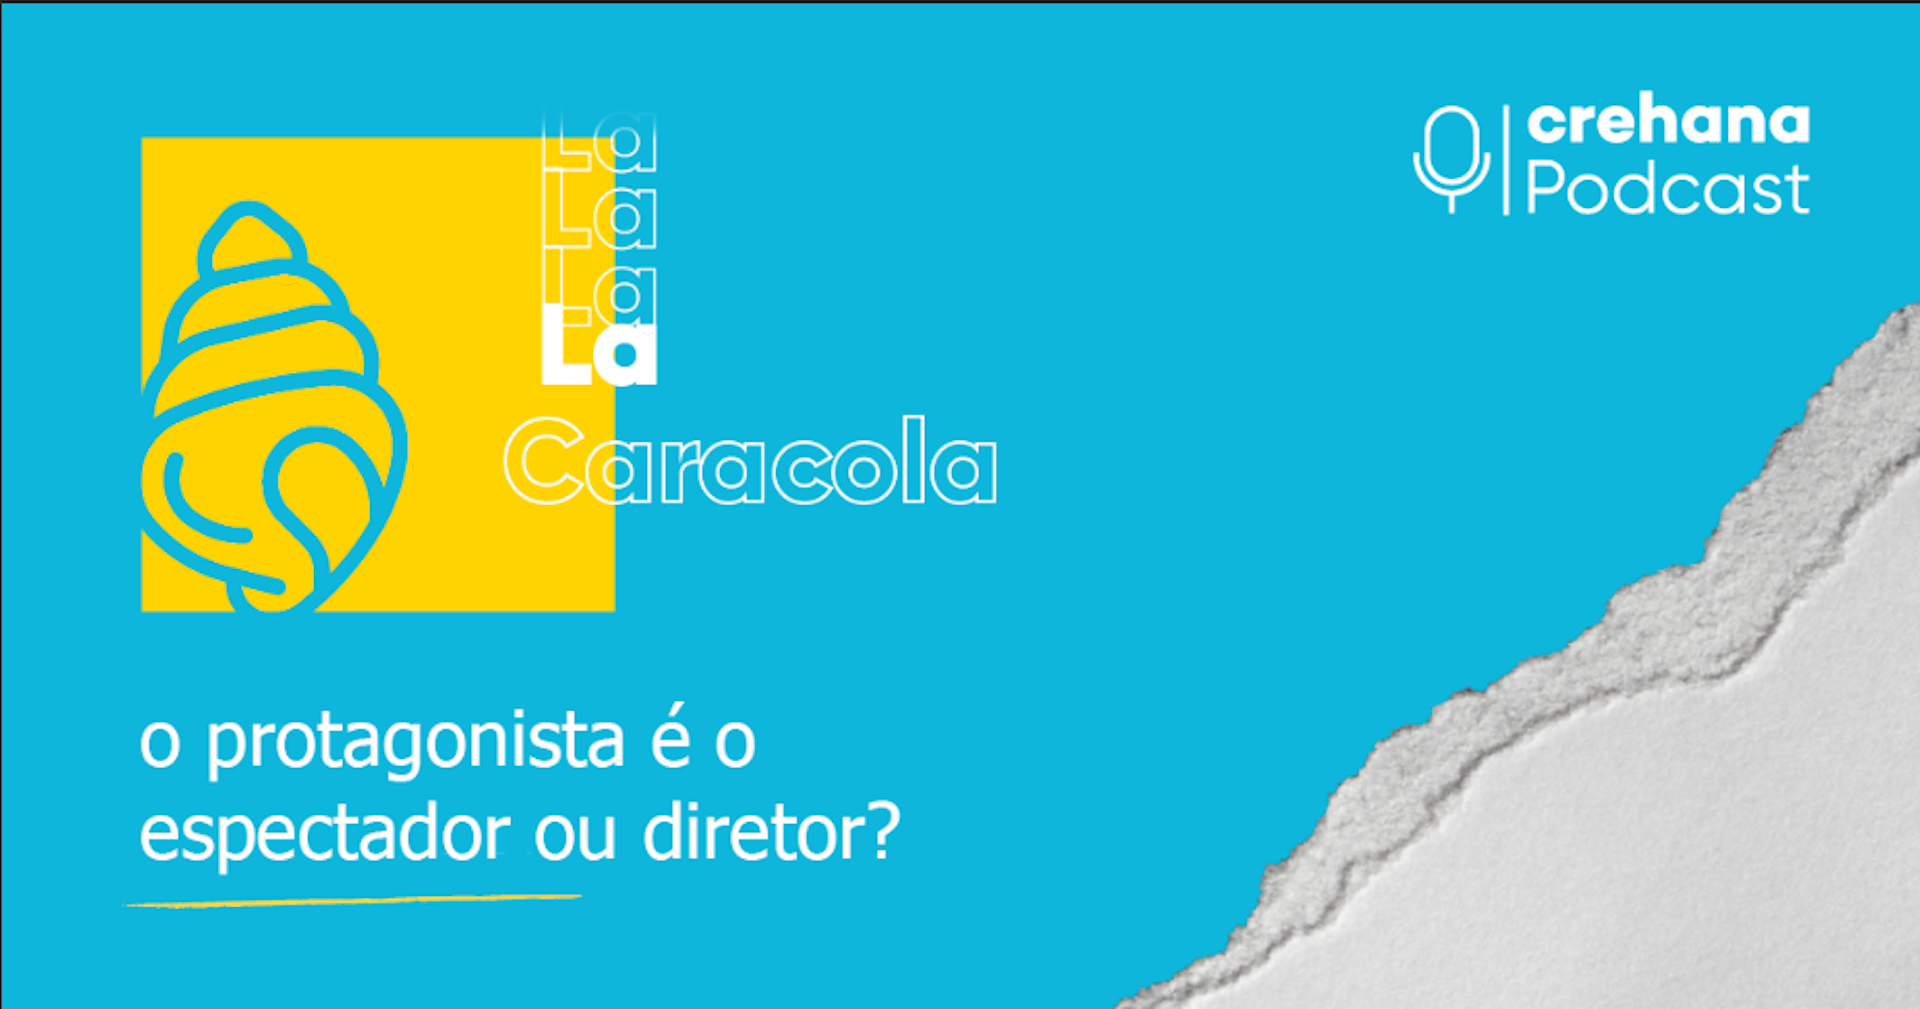 Podcast La Caracola, episódio 6: O protagonista é o espectador ou o diretor?